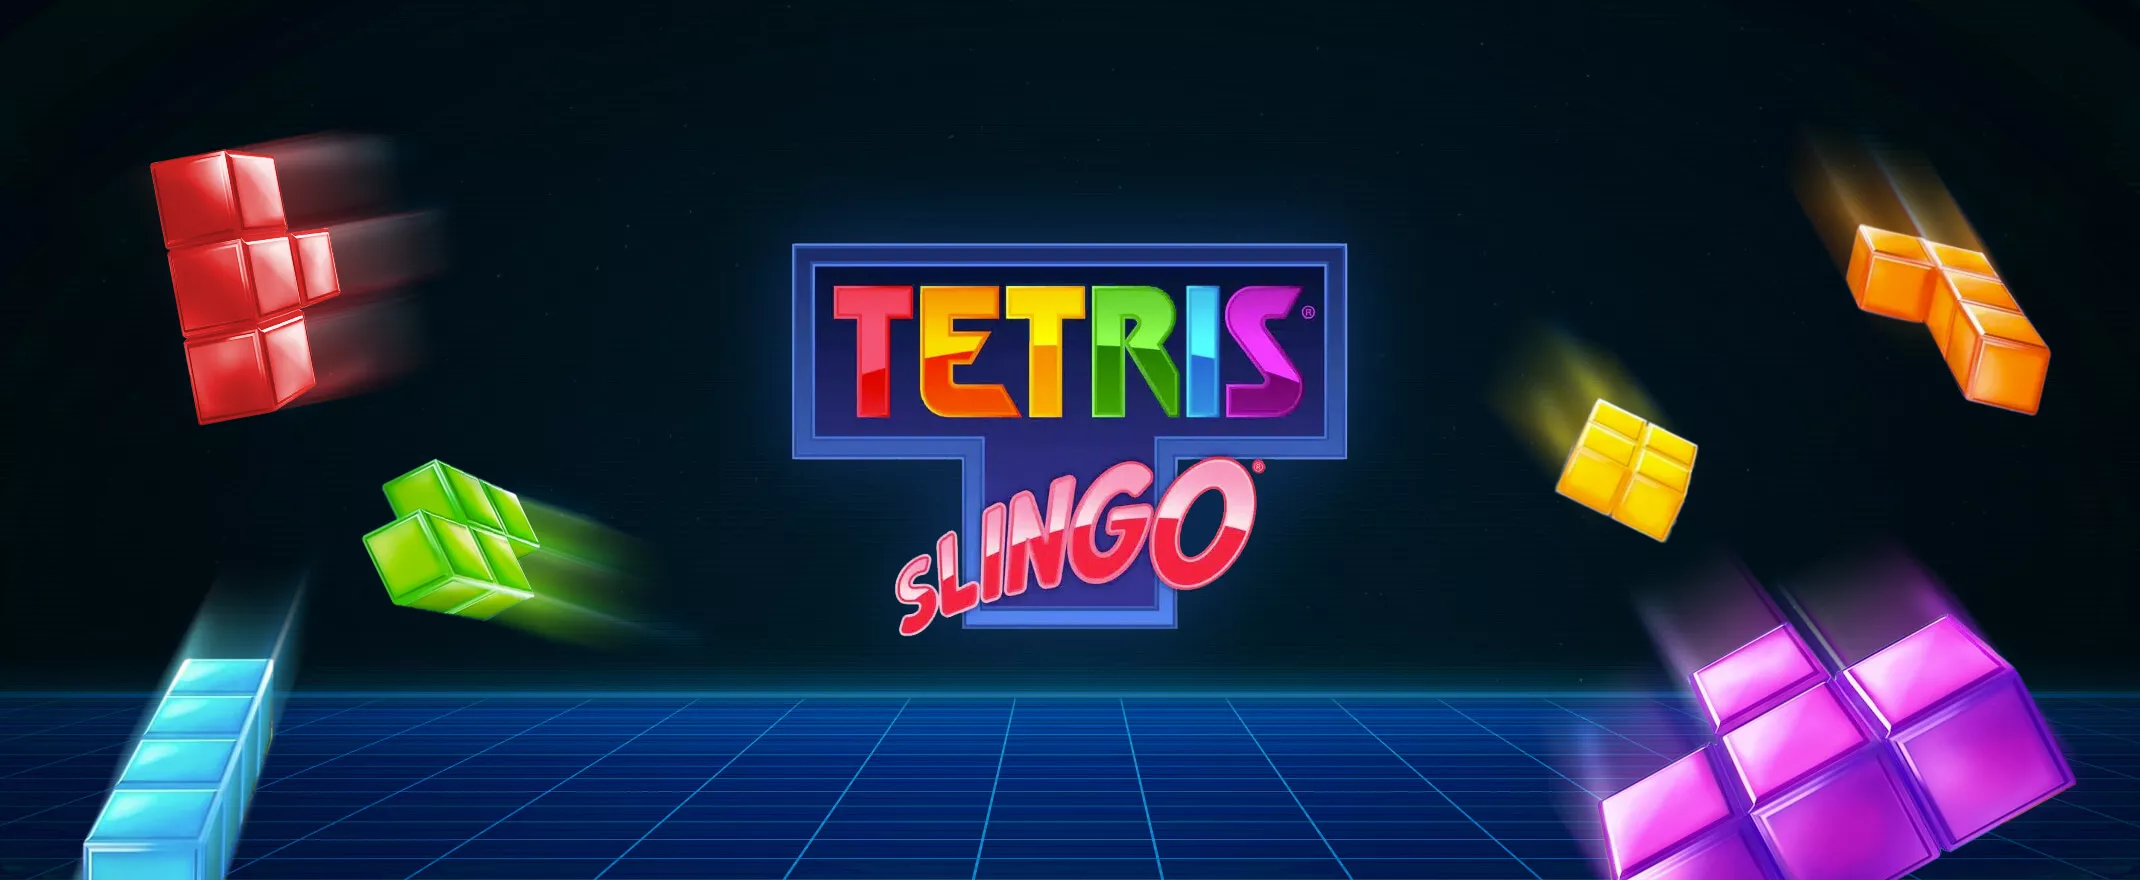 Gaming Realms To Develop Tetris Slingo